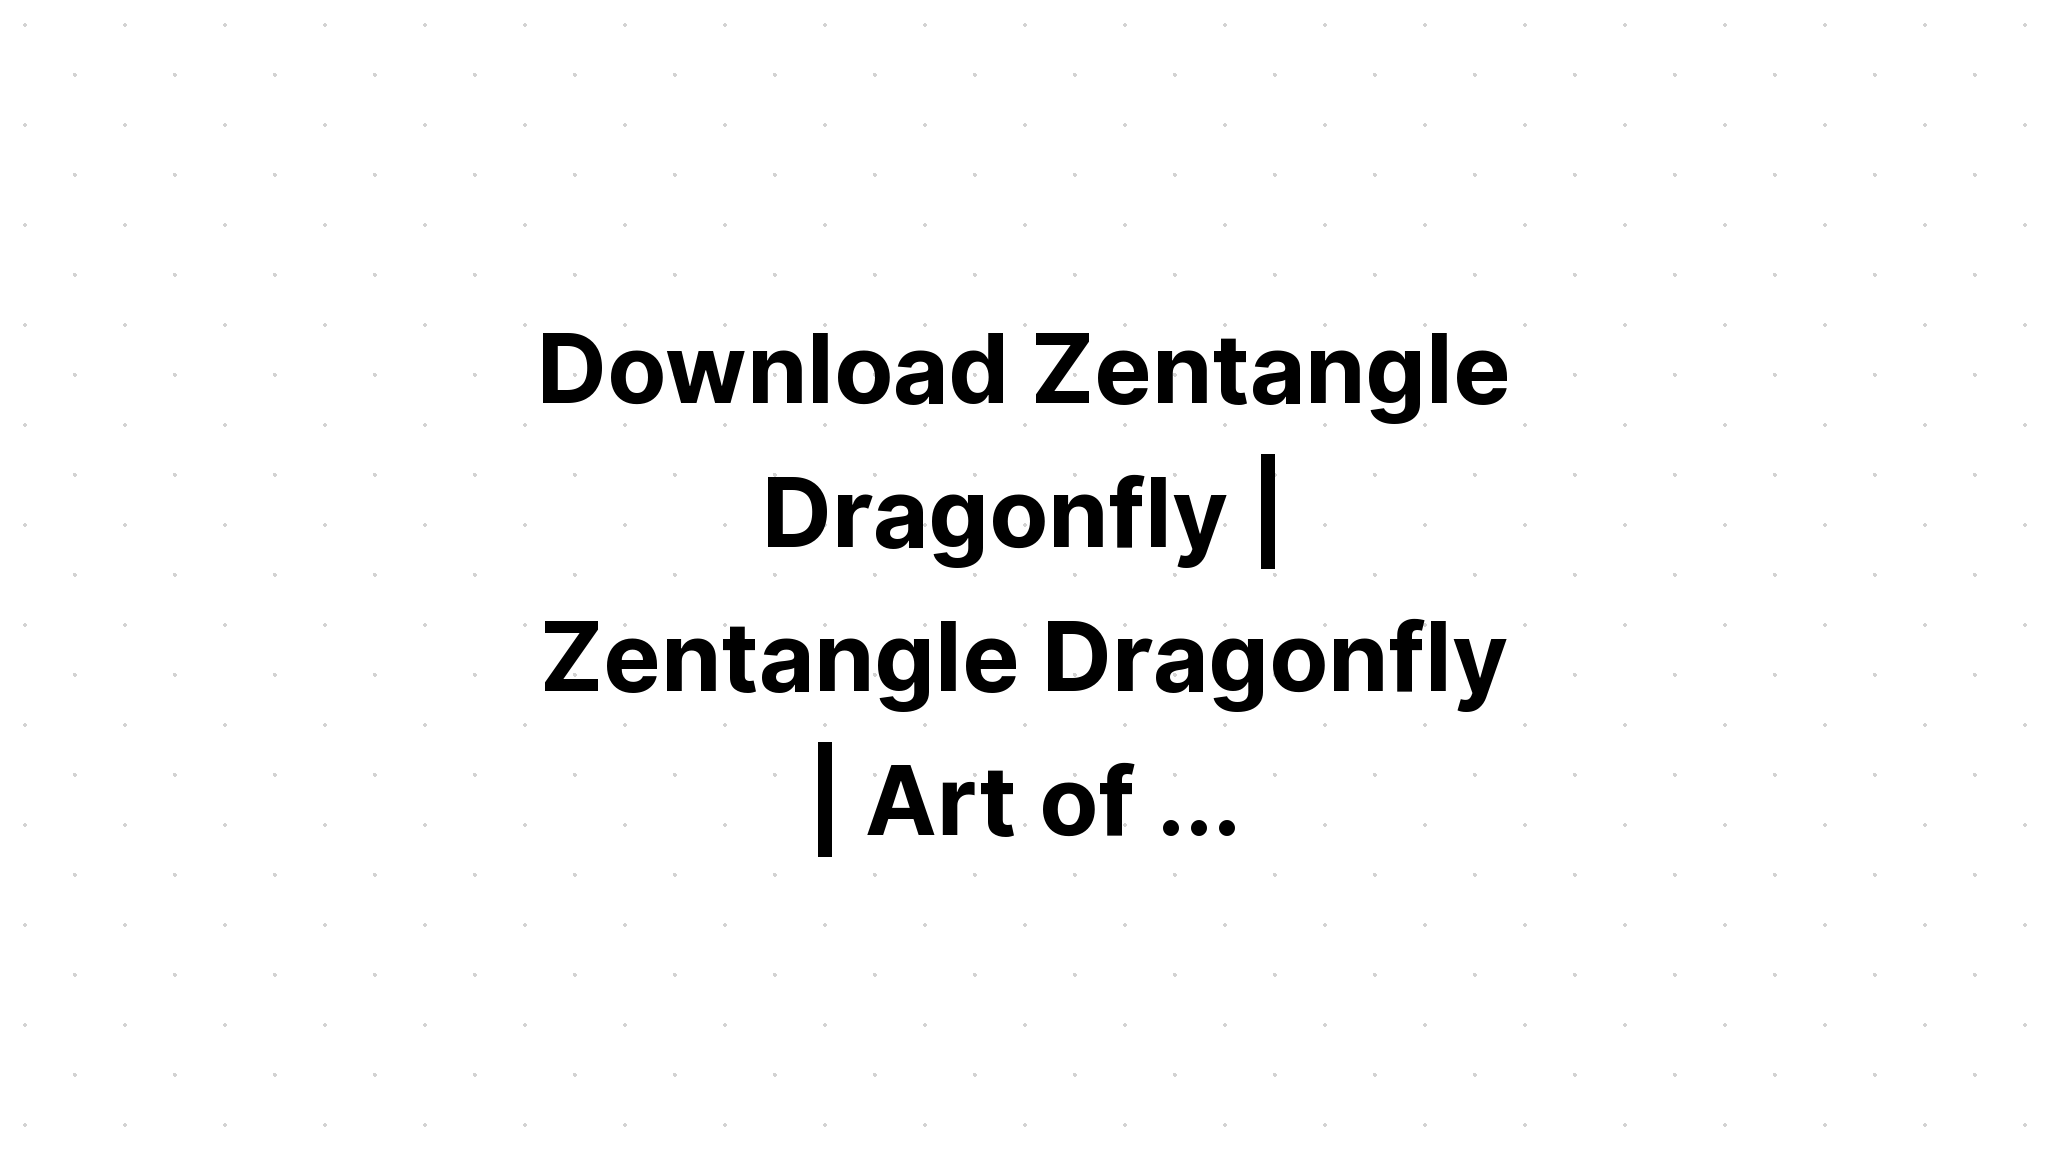 Download Zentangle Dragonfly Monogram SVG File